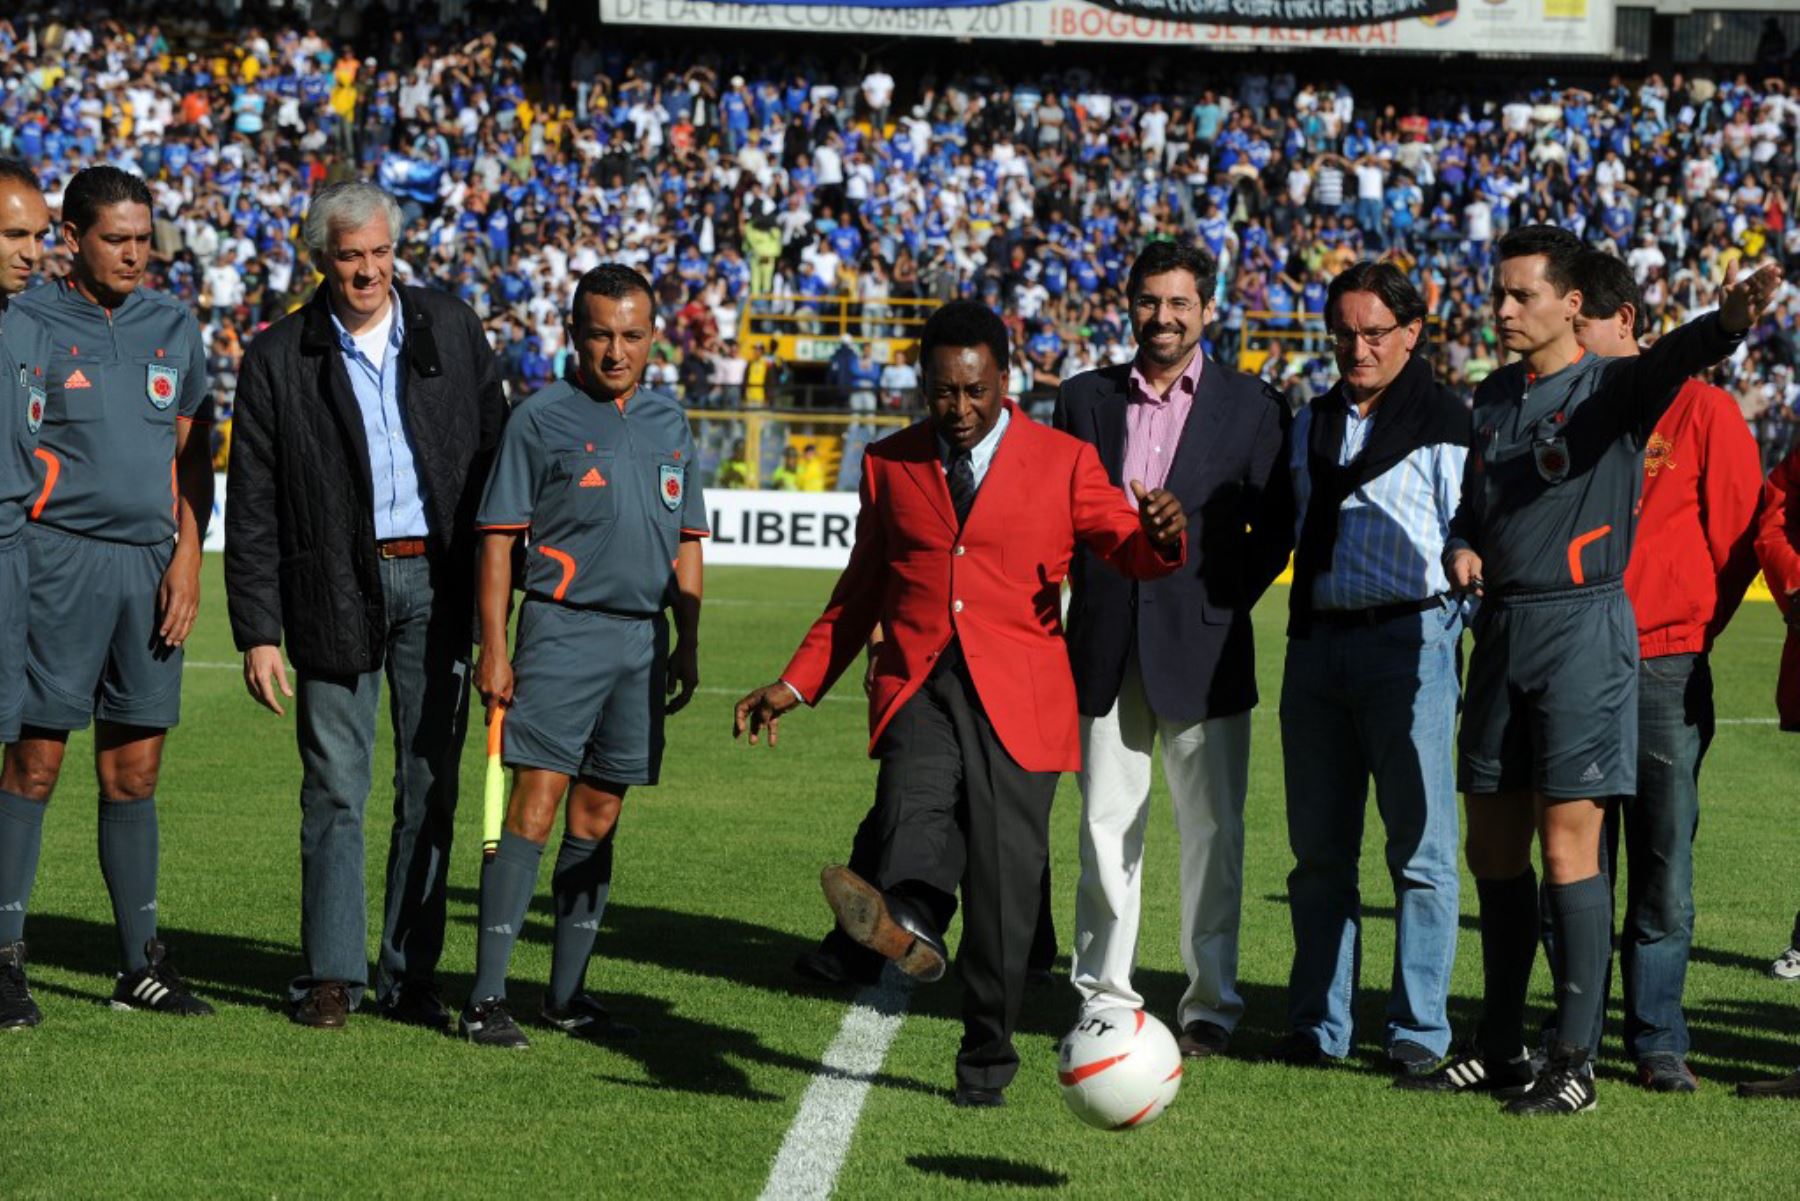 La leyenda del fútbol brasileño Pelé patea el balón en el estadio El Campín de Bogotá el 17 de enero de 2010, para lanzar un partido amistoso de fútbol entre Millonarios y Santa Fe de Bogotá. Foto: AFP